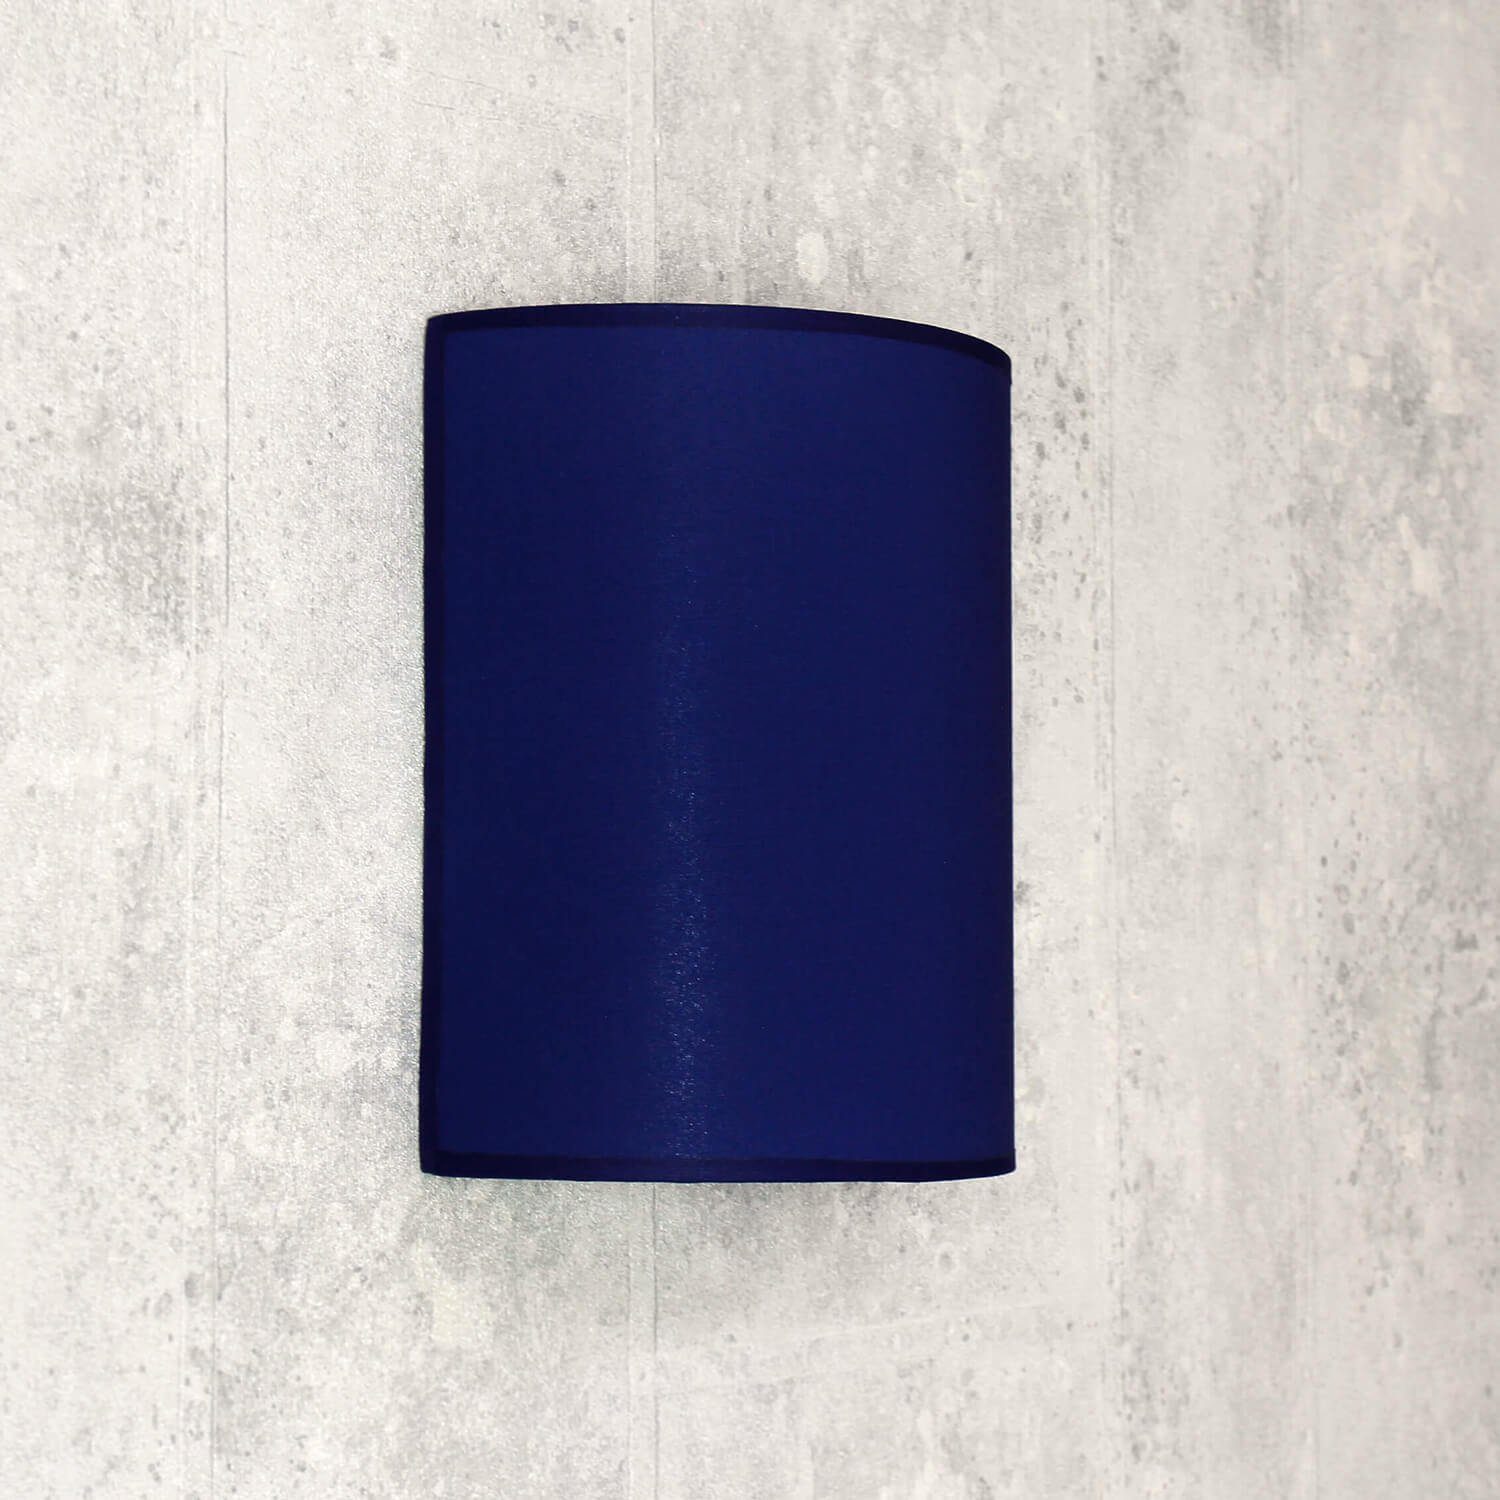 Schirm Wandleuchte Blau Lampe Loft Wohnzimmer ALICE, Licht-Erlebnisse dekorativ Wandlampe ohne Leuchtmittel, halbrund Stoff